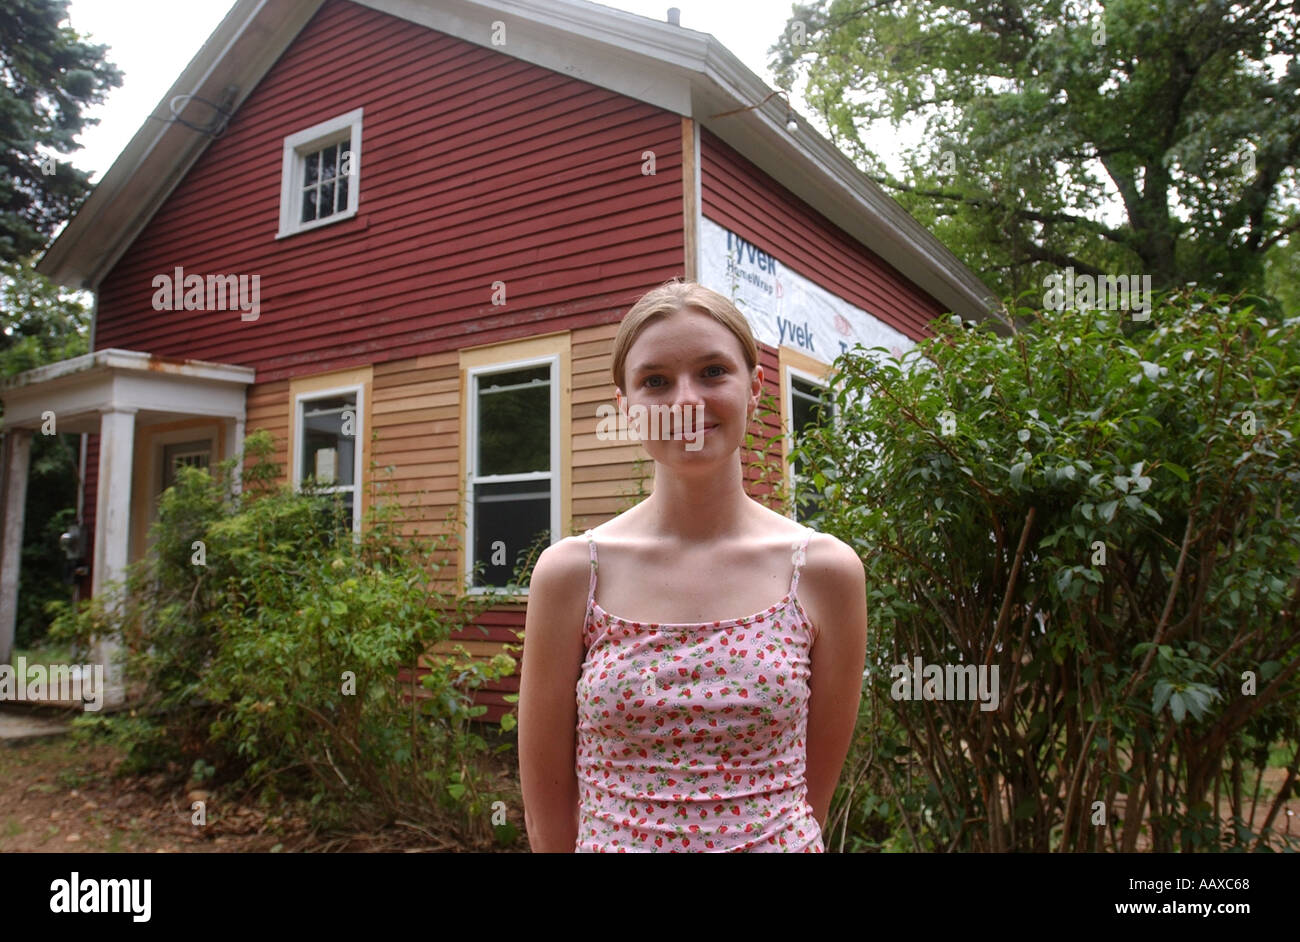 Giovane ragazza adolescente che ha recentemente acquistato la propria casa come un investimento Foto Stock